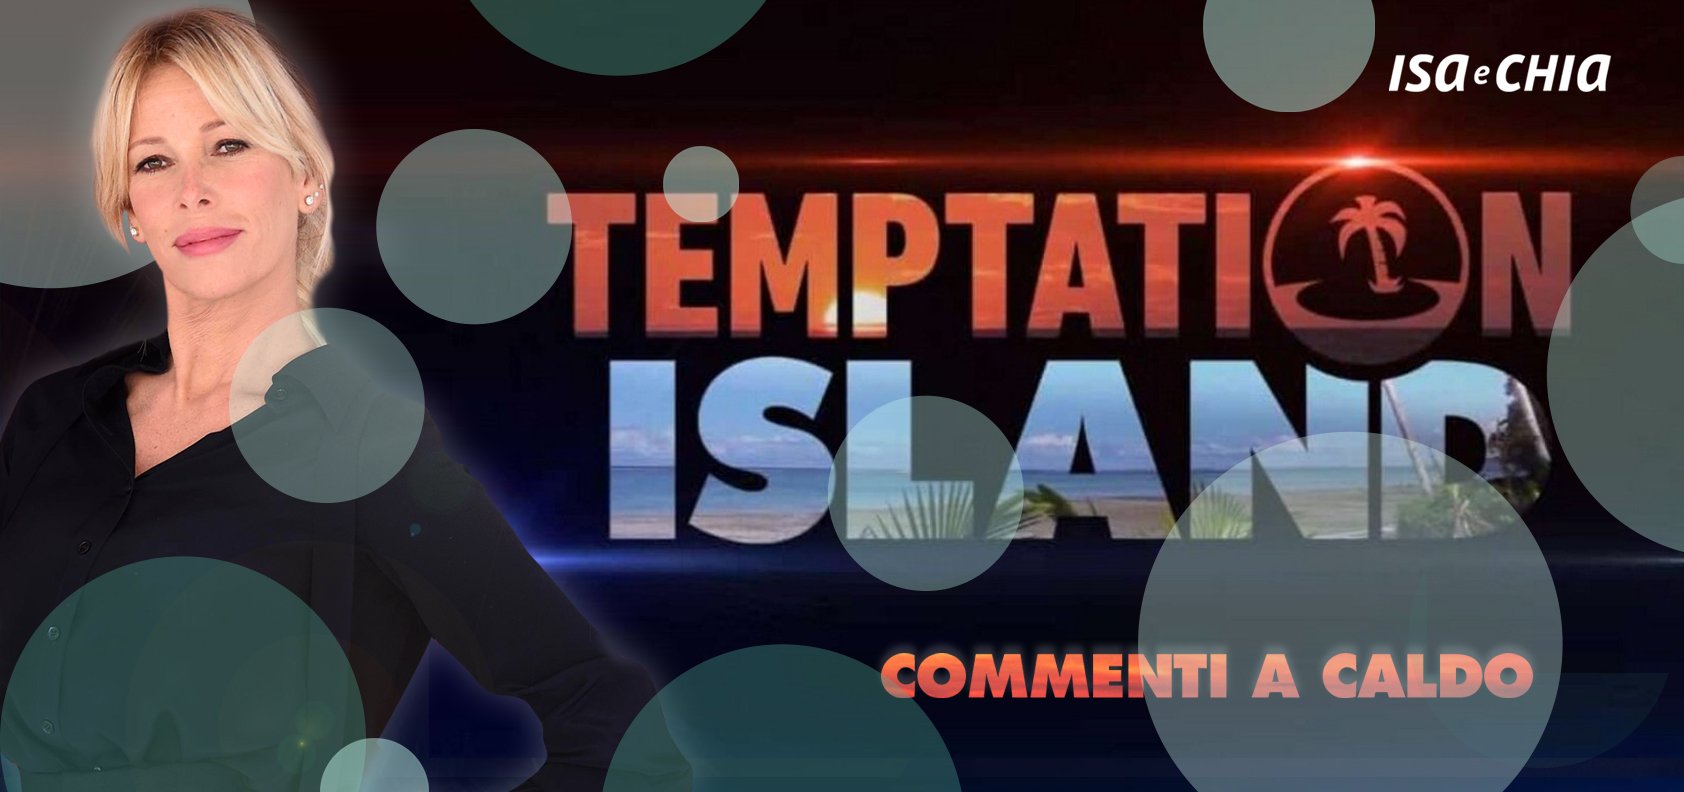 ‘Temptation Island 8’, terza puntata: commenti a caldo